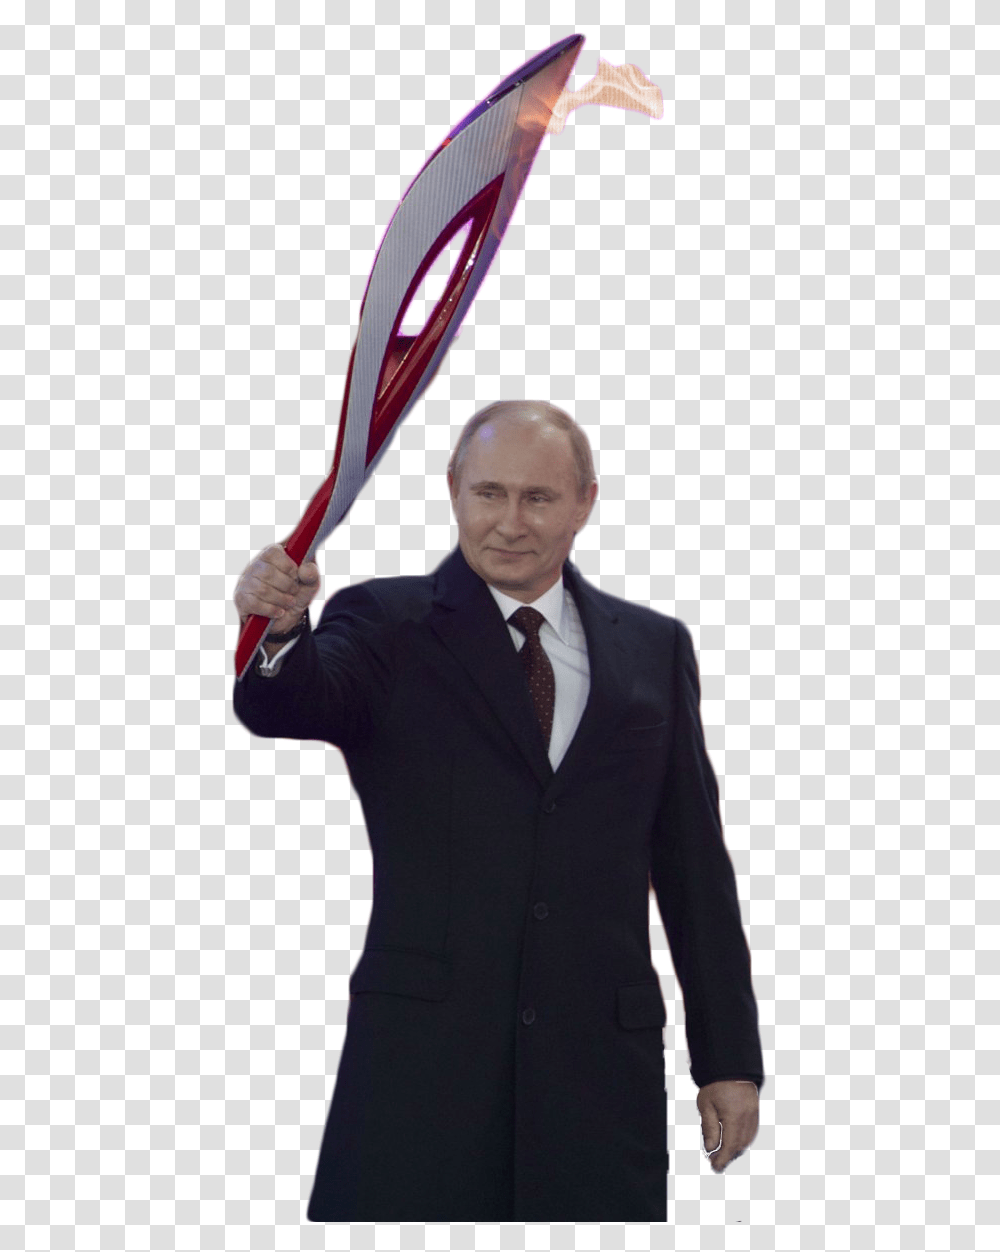 Putin, Tie, Person, Suit Transparent Png